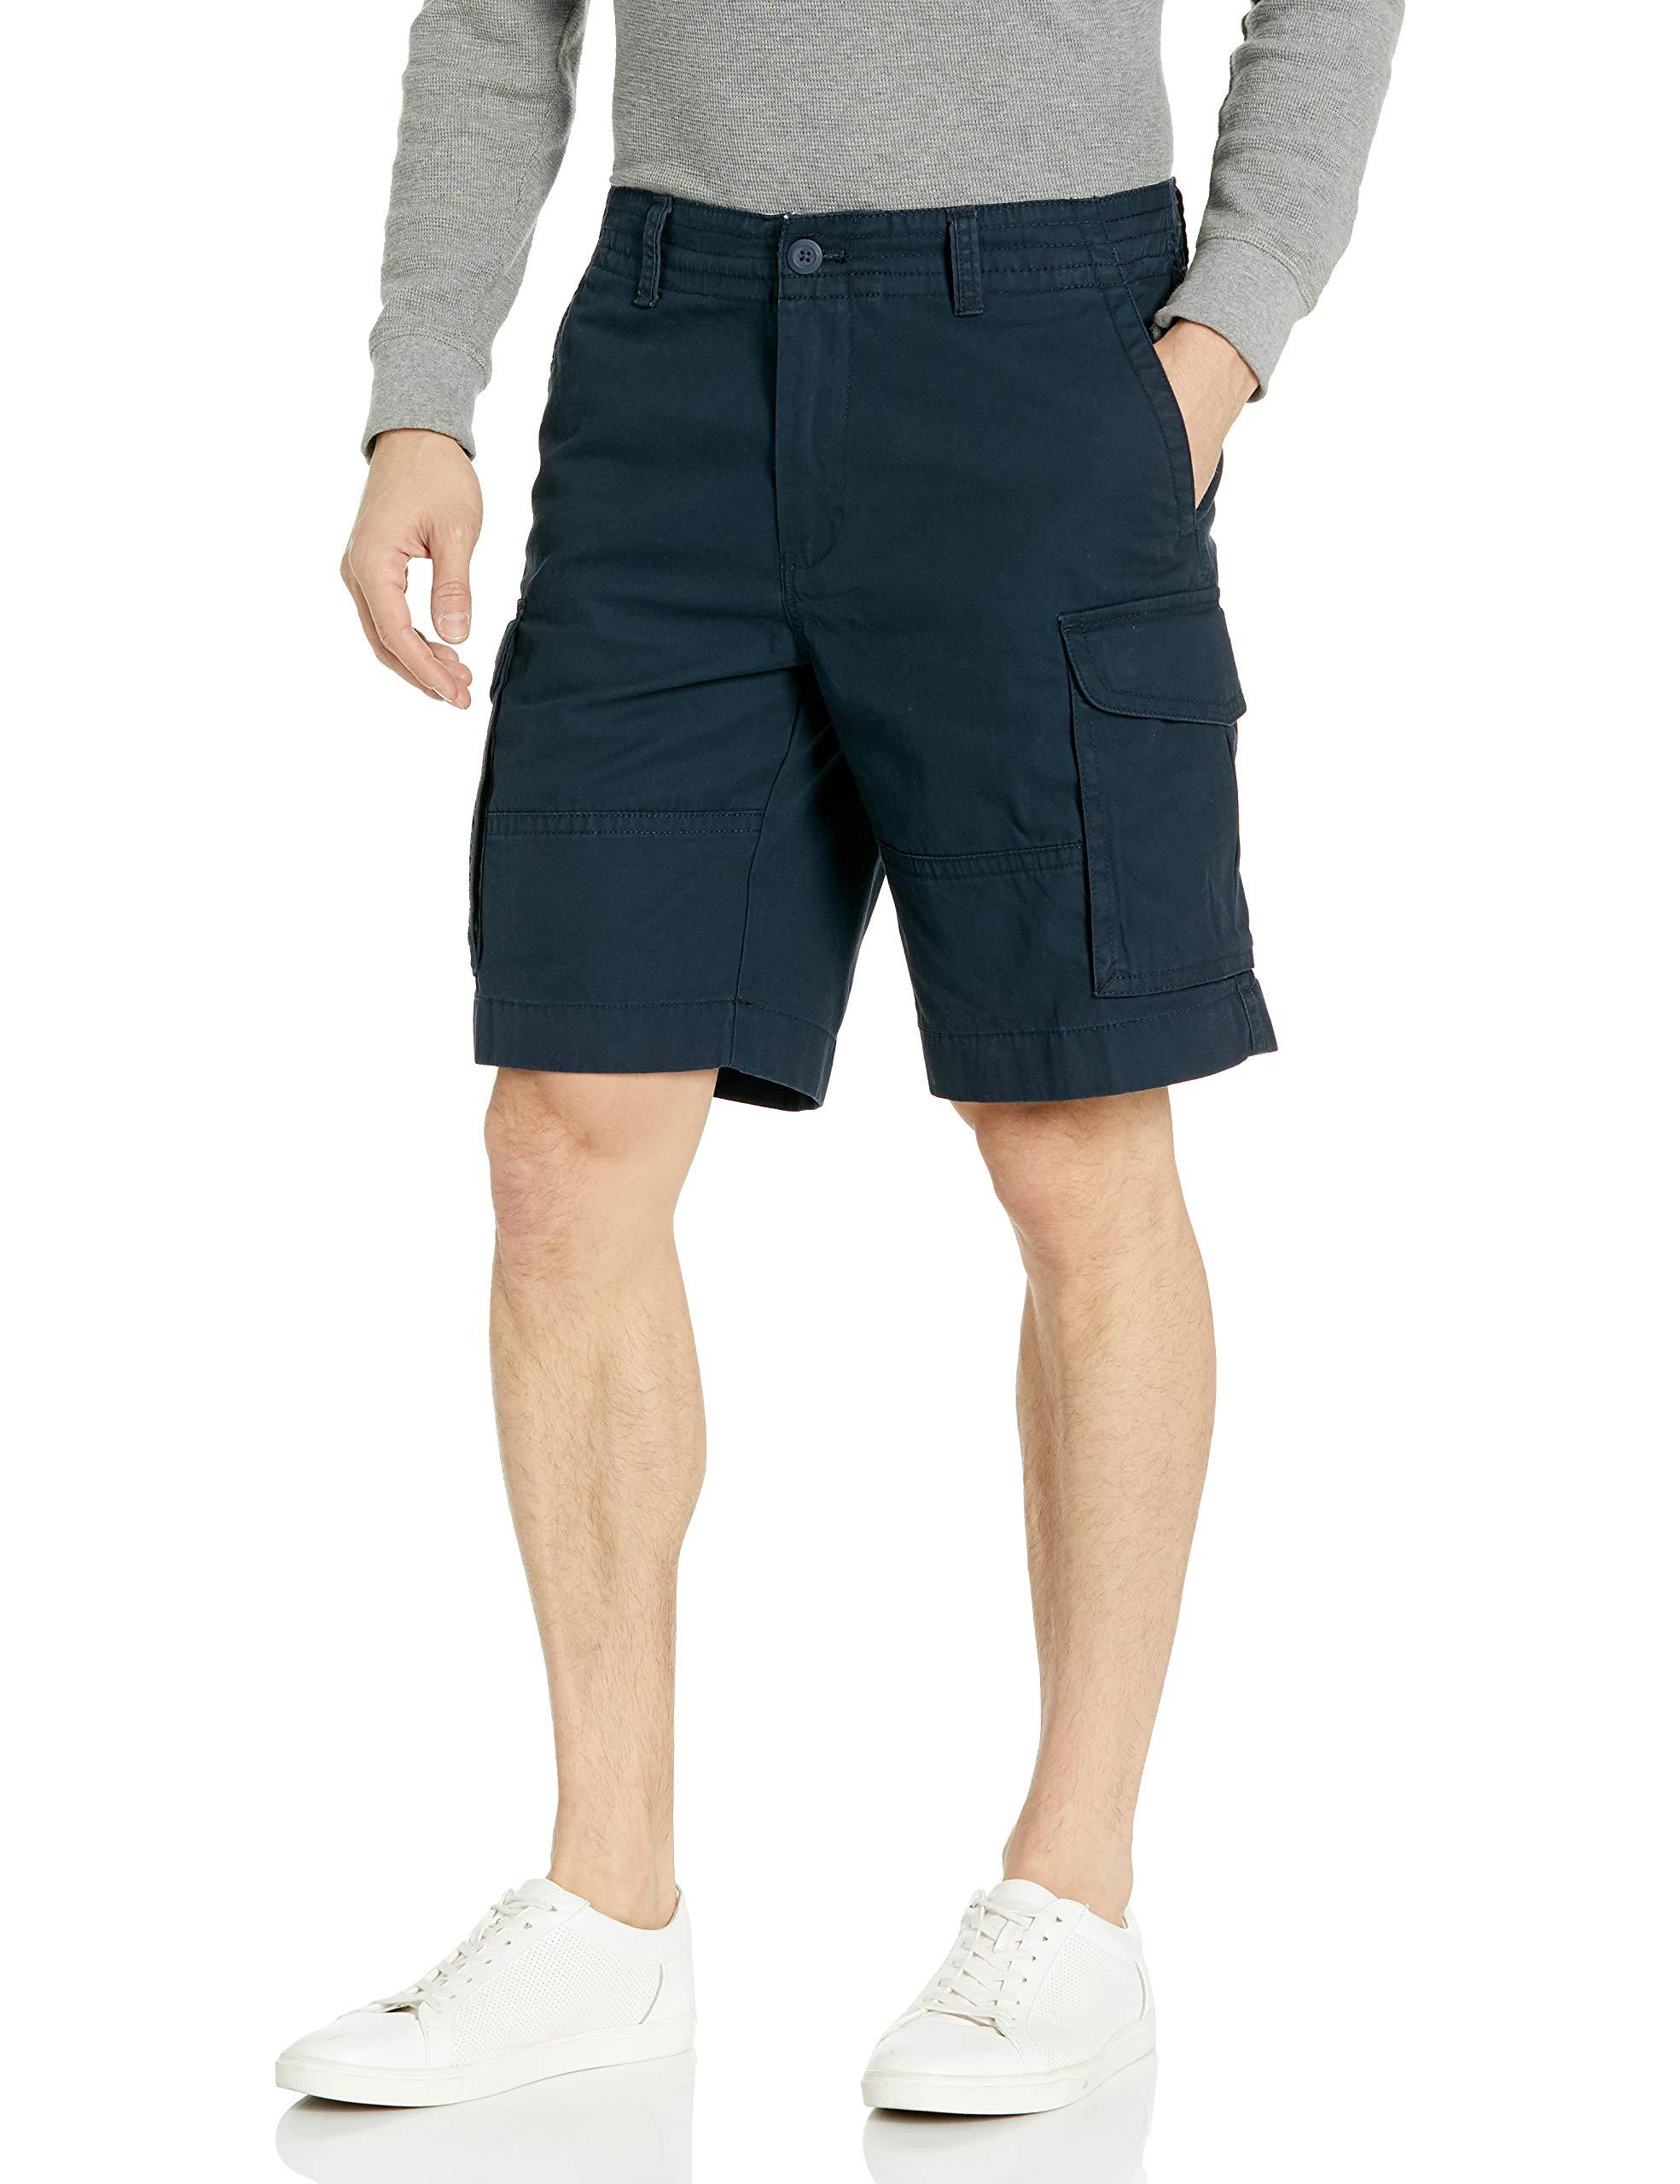 Tommy Hilfiger 6 Pocket Cargo Shorts in Blue for Men - Save 2% - Lyst